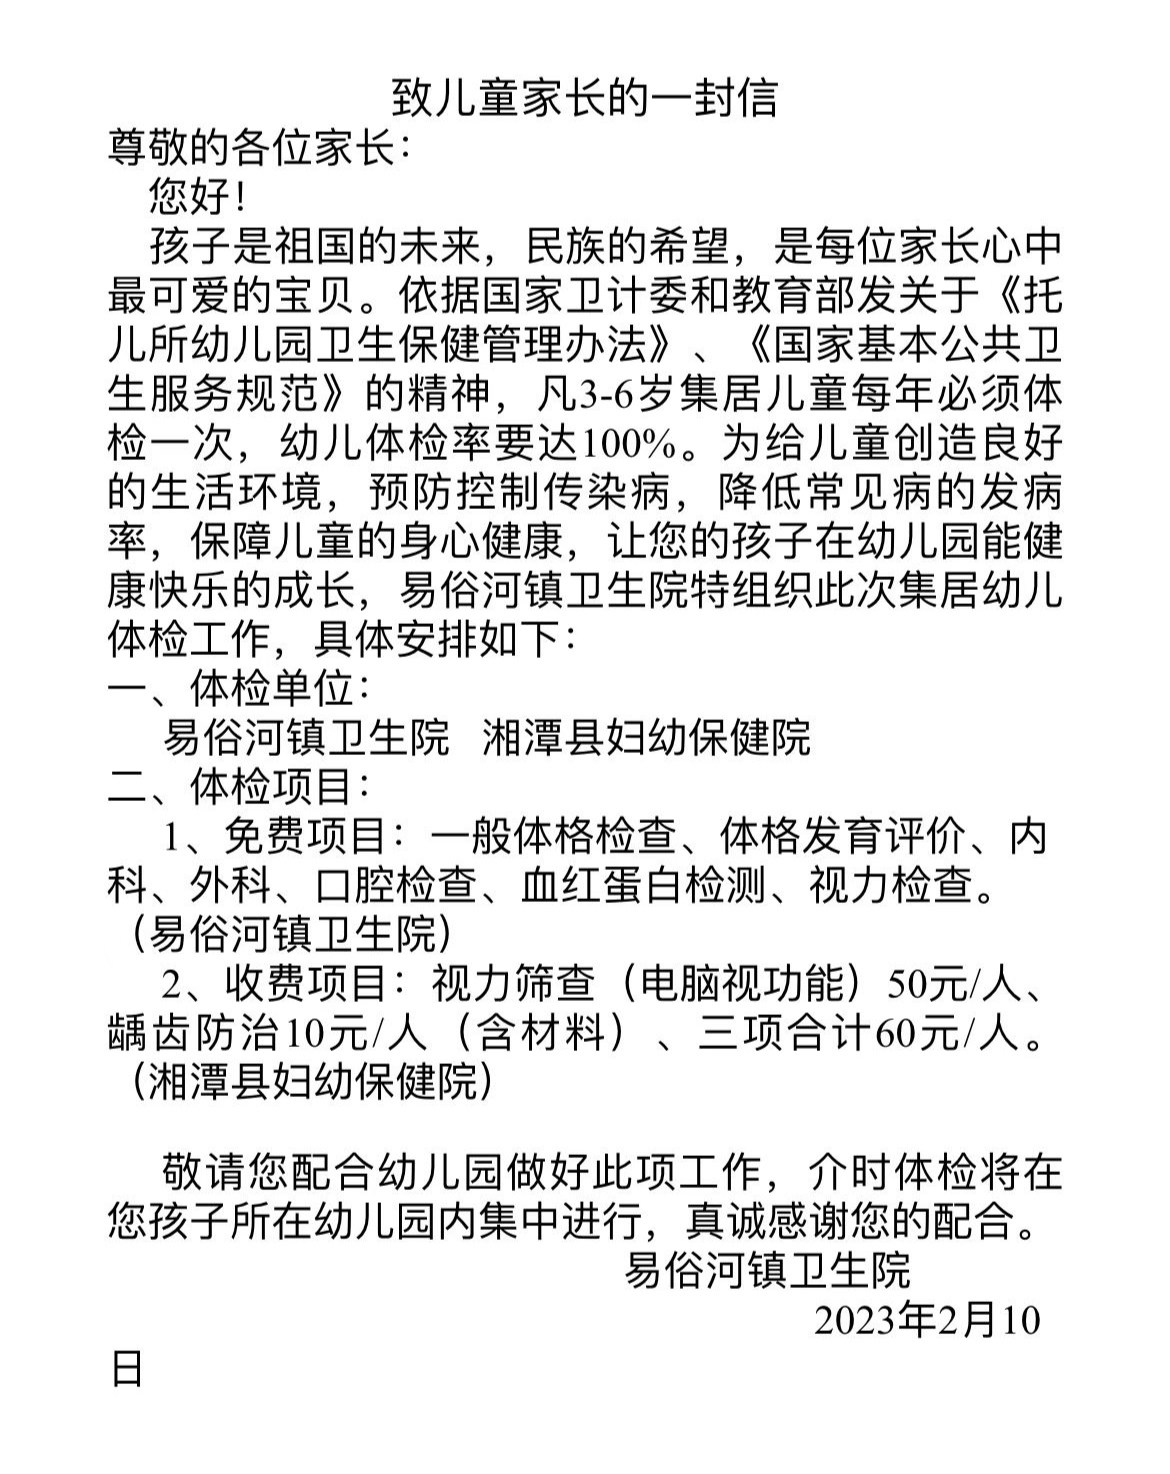 湘潭县易俗河镇金桂北路发生一起命案造成1死2伤